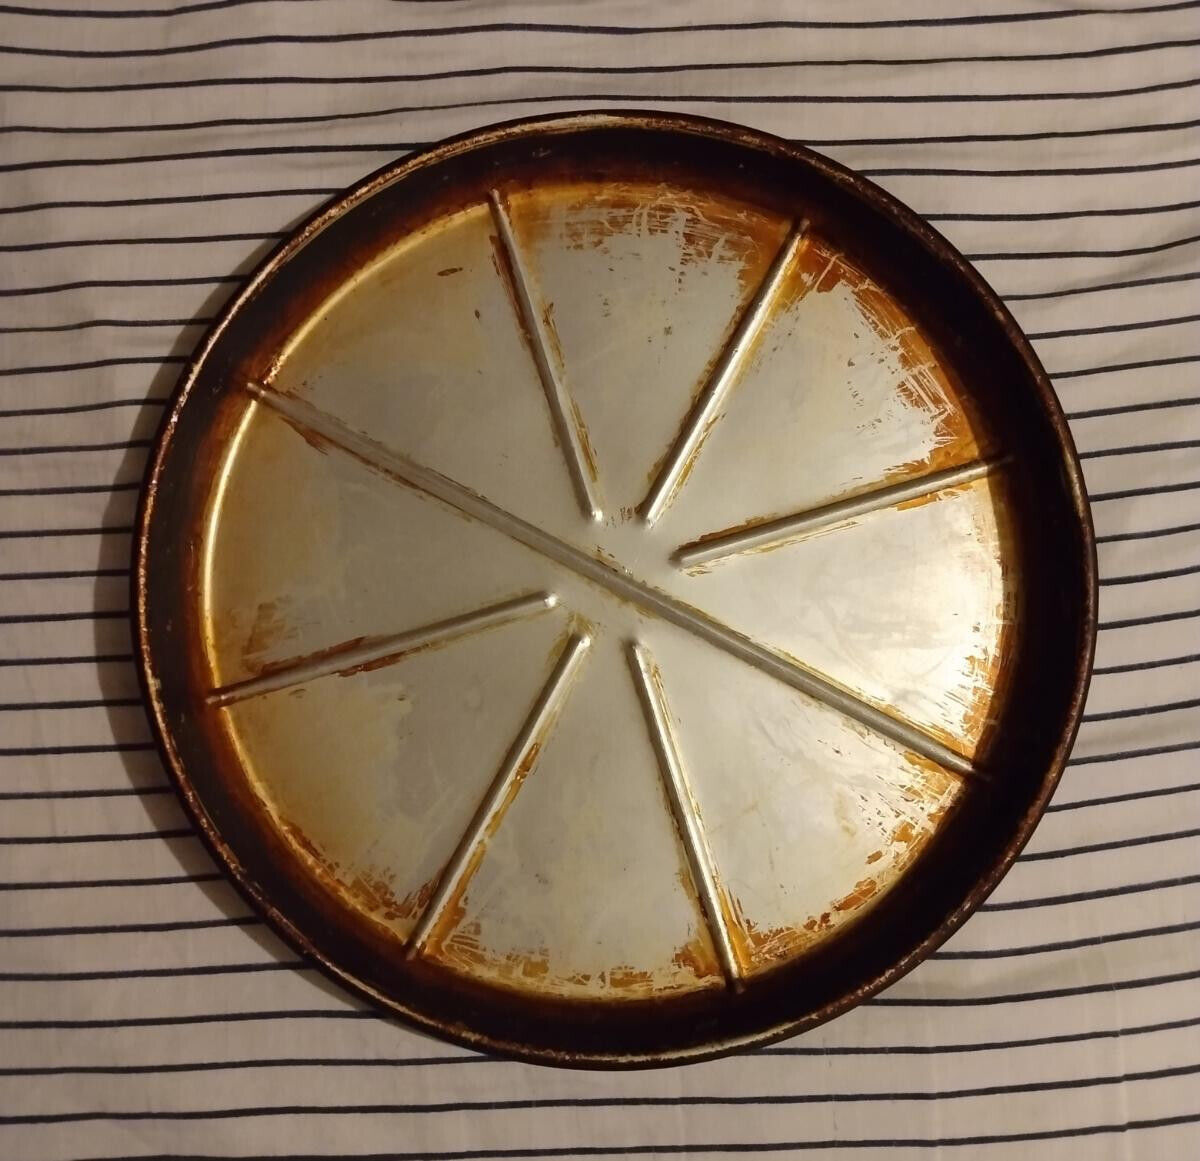 Original Pizza Hut 14” Seasoned Large Pizza Pan - ON SALE